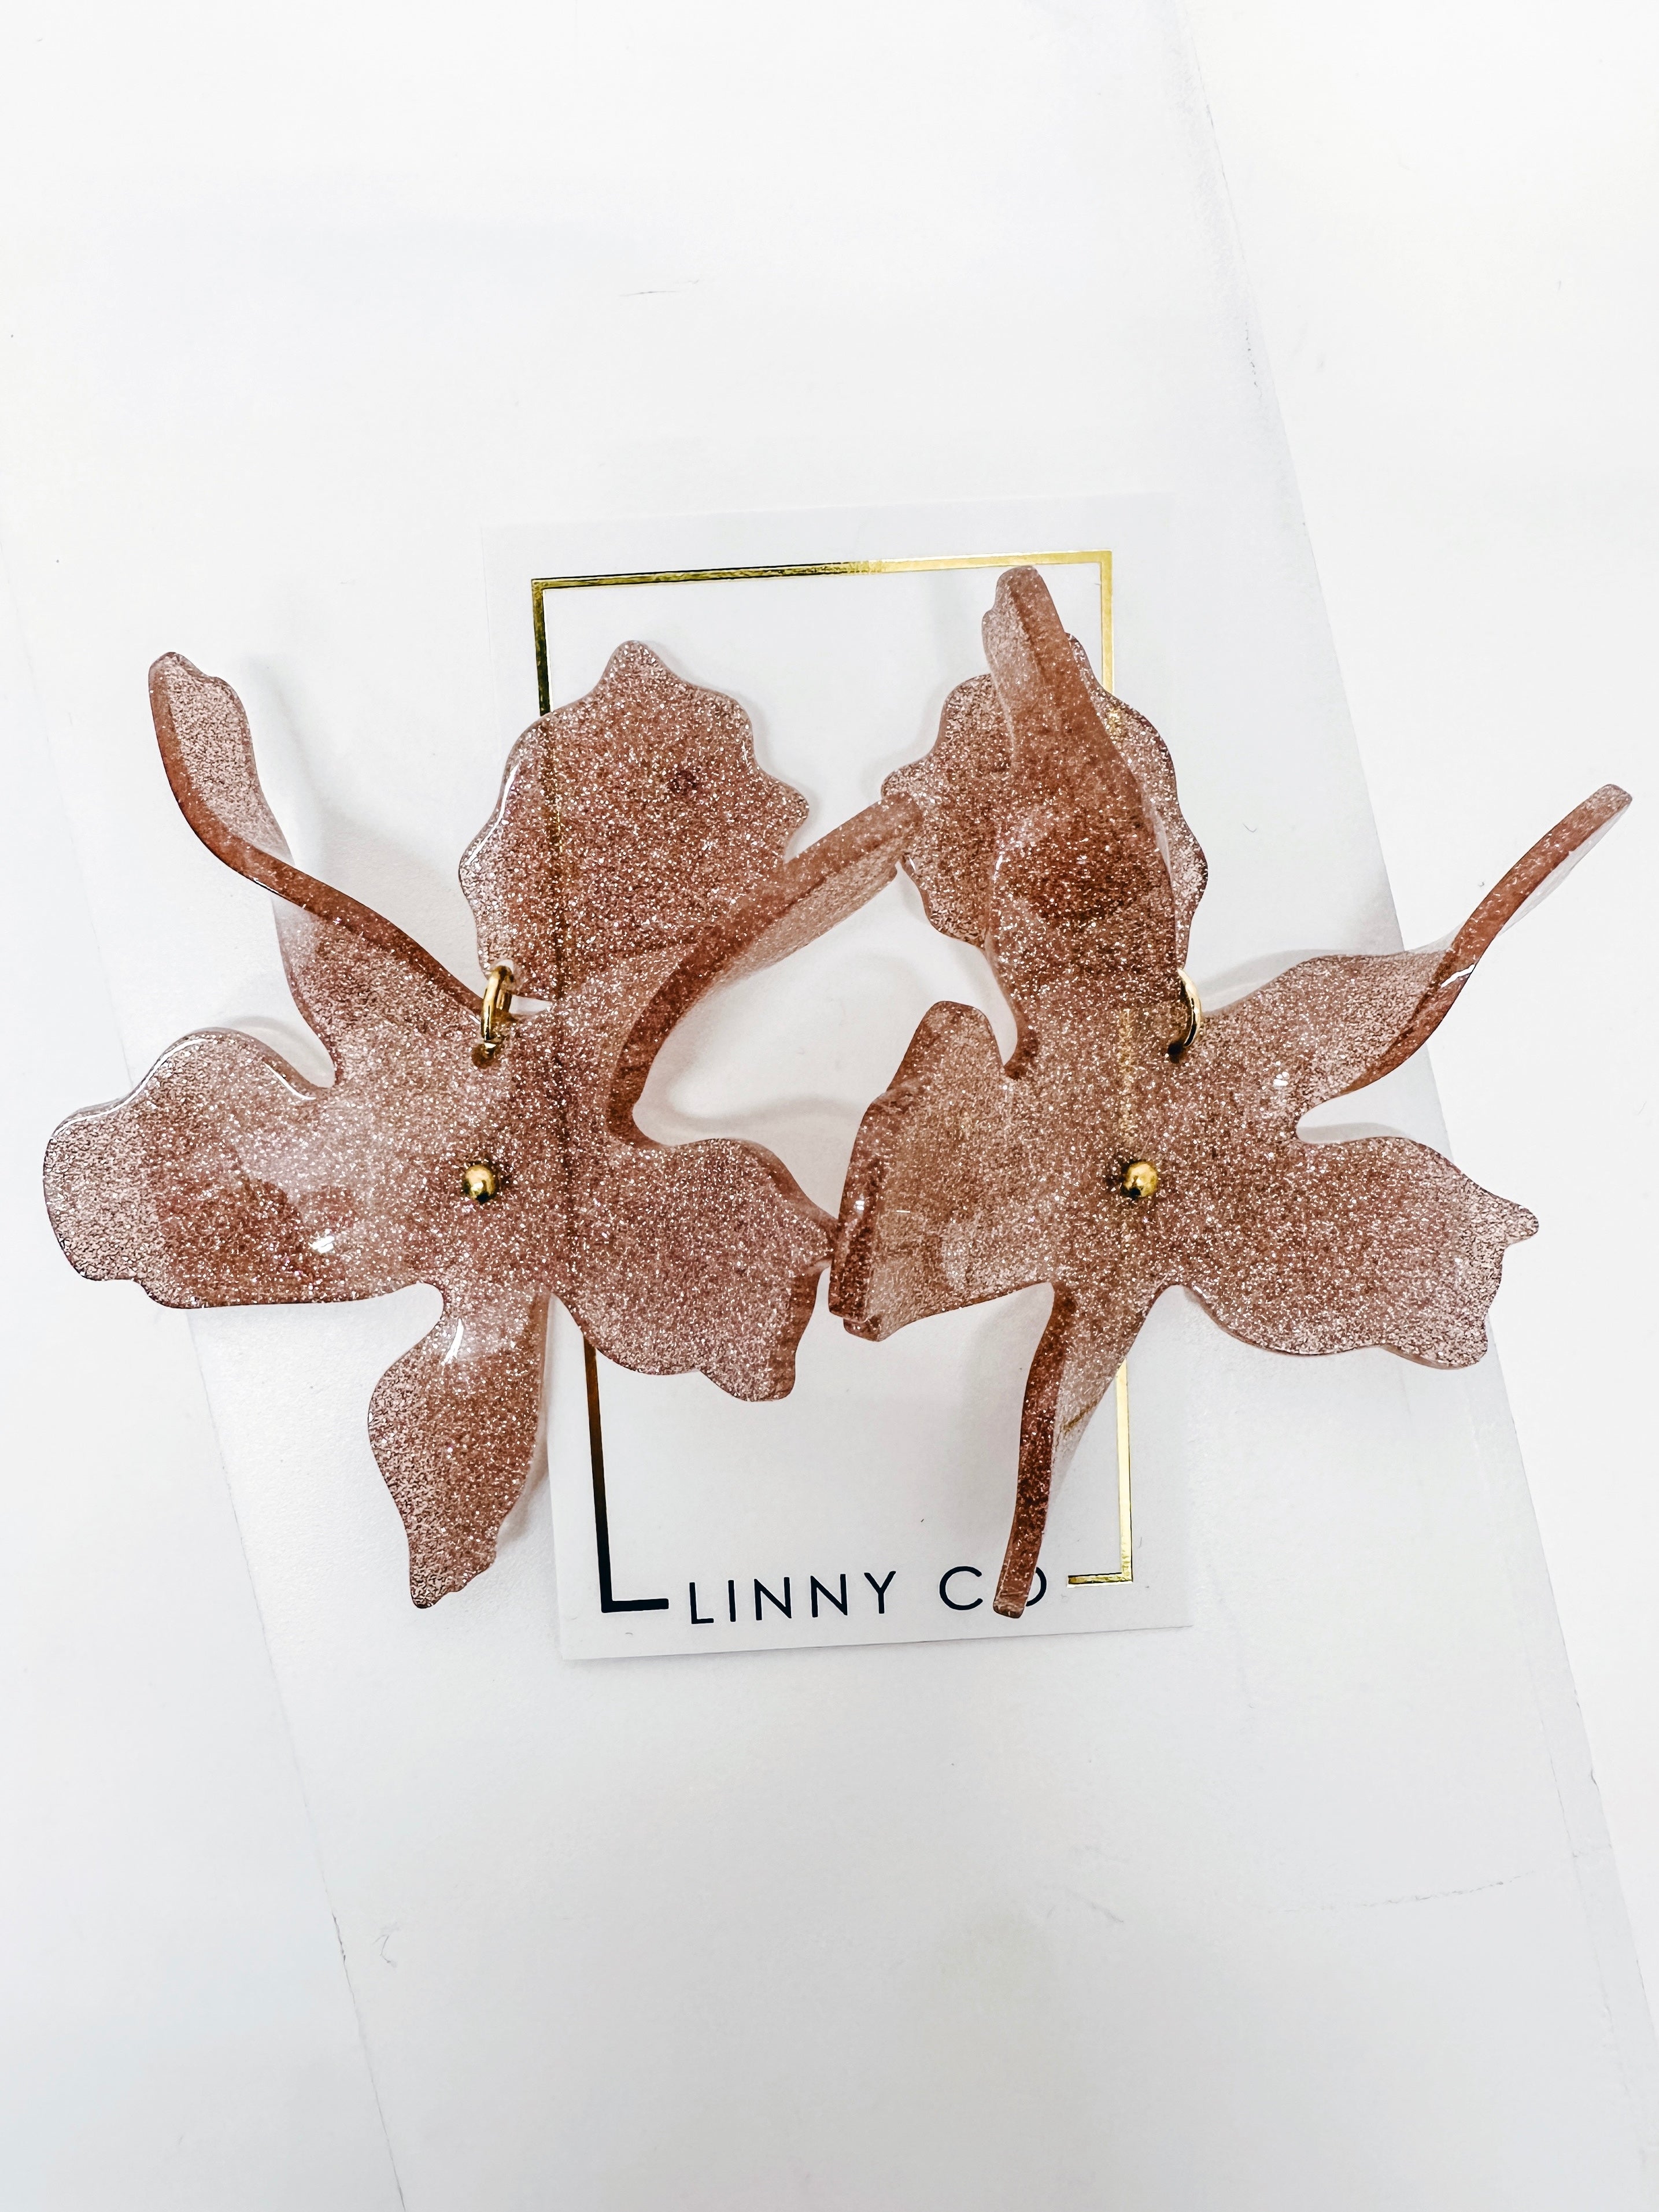 Linny Co-Flora Blush Glitter Earrings